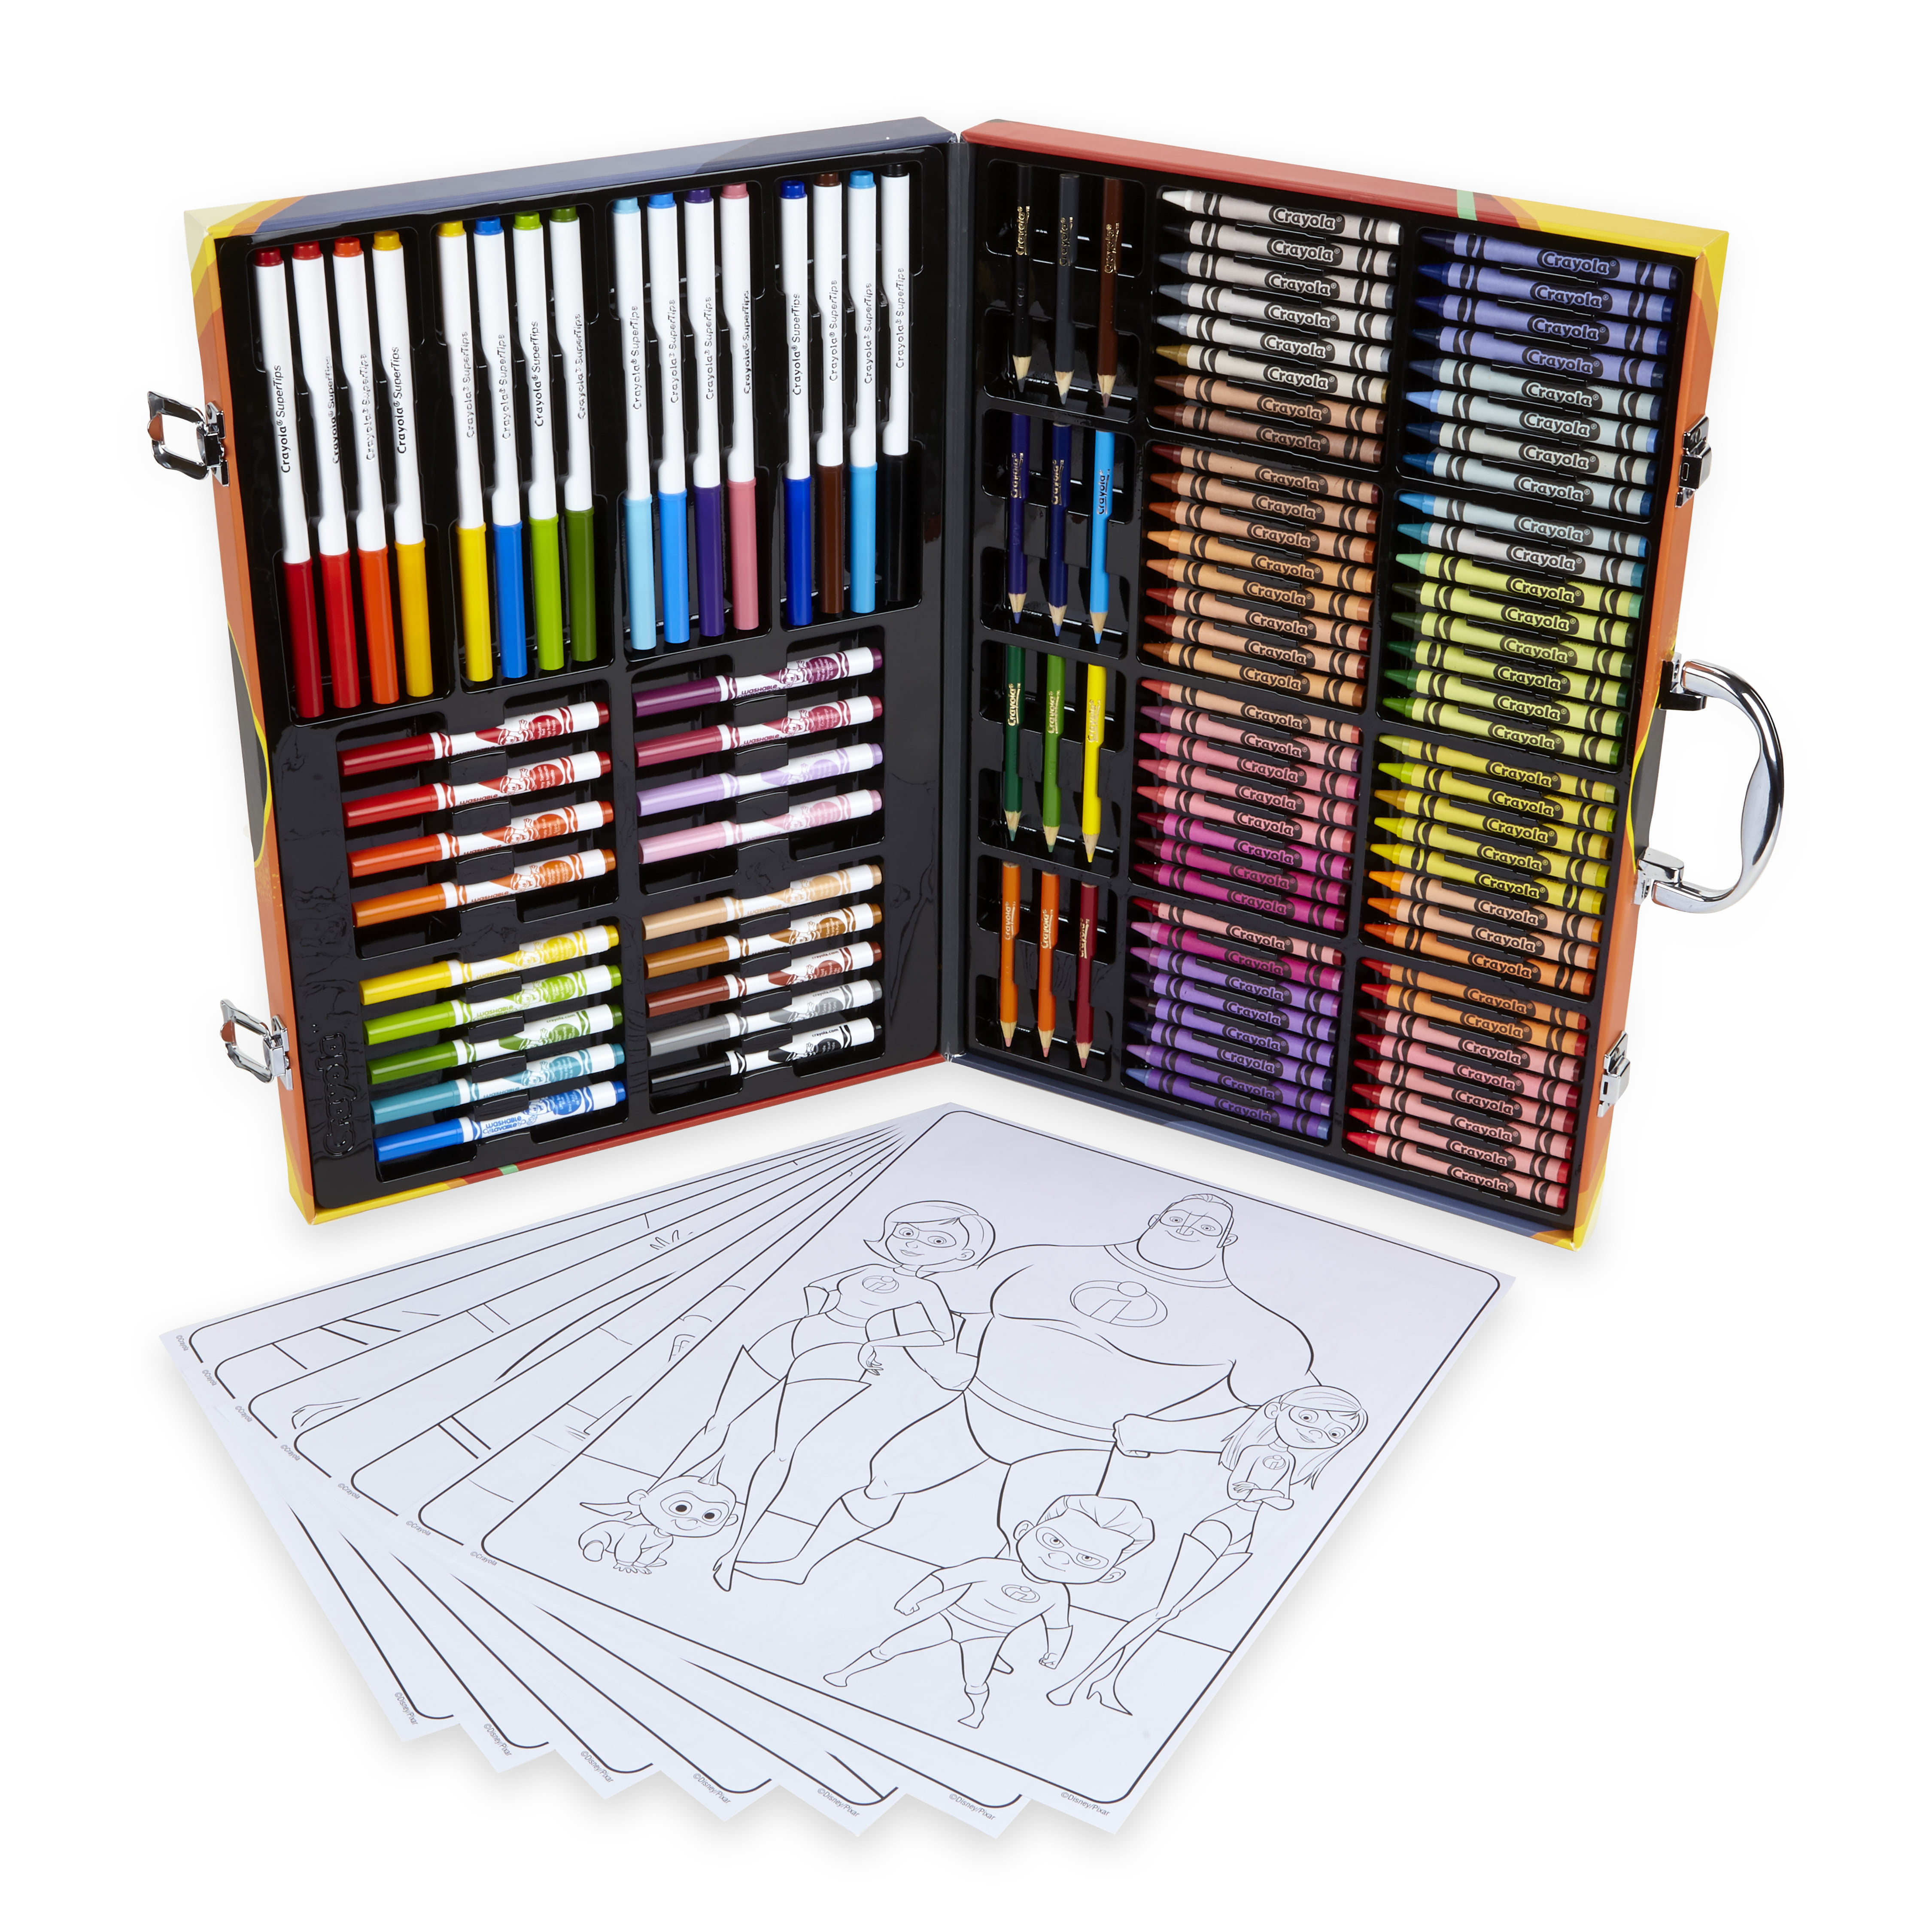 Crayola Despicable Me 120 Piece Inspiration Art Case 